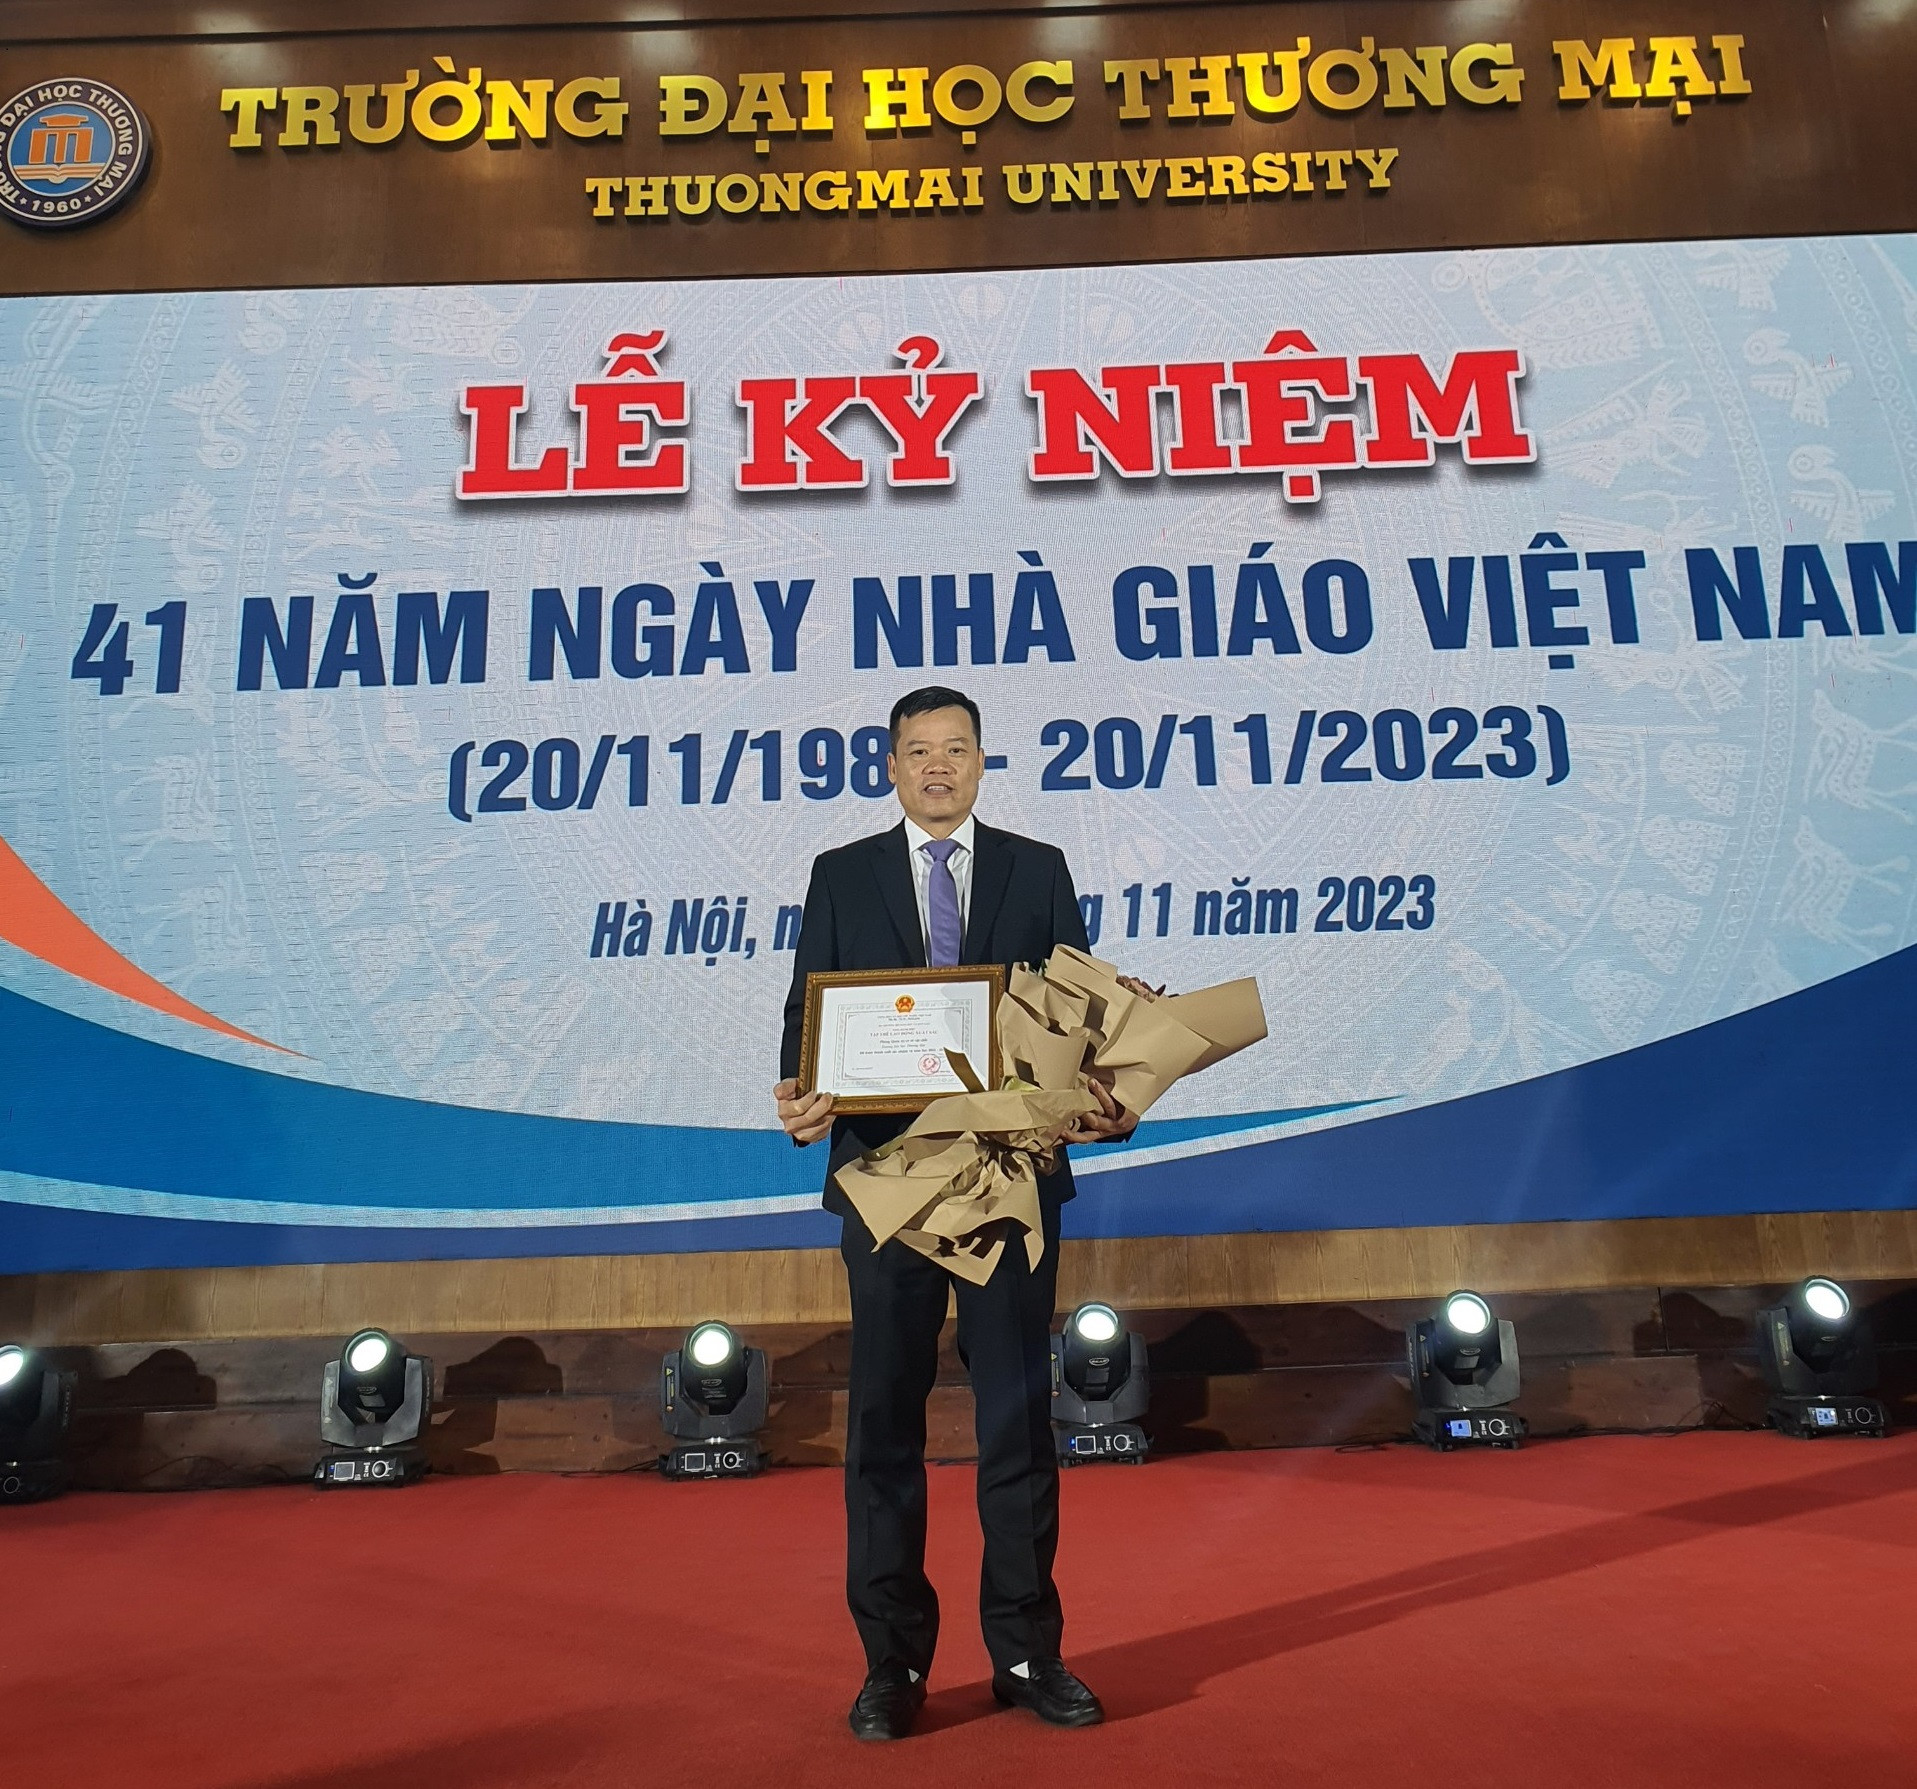 Lễ kỉ niệm 41 năm ngày nhà giáo Việt Nam (20/11/1982 - 20/11/2023)